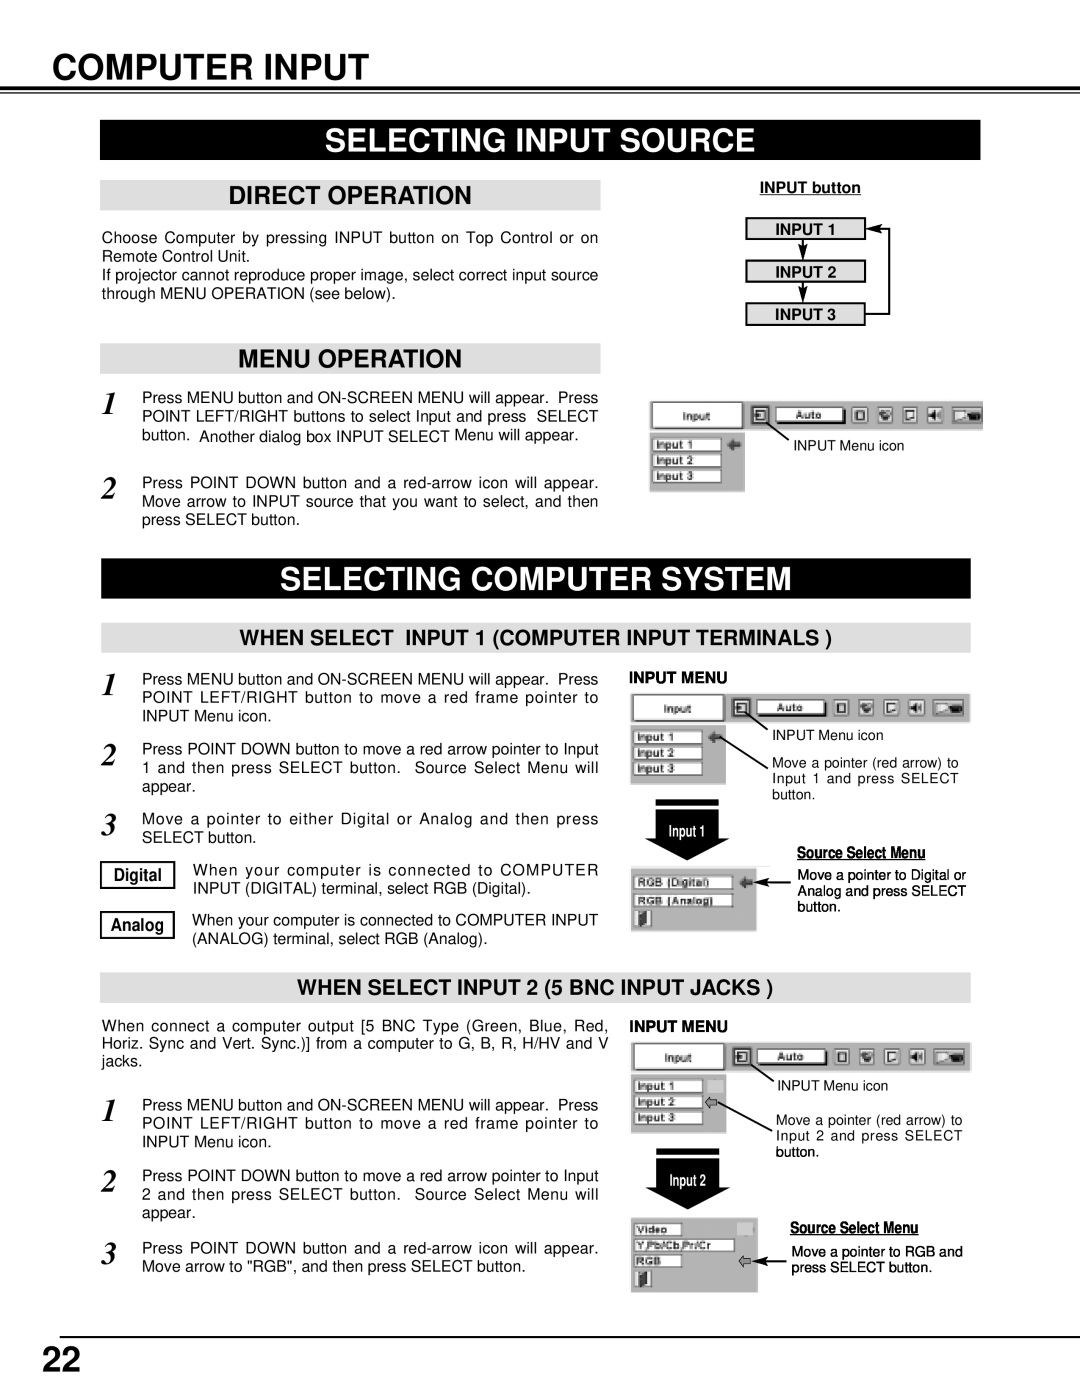 BOXLIGHT MP-41T manual Computer Input, Selecting Input Source, Selecting Computer System, Direct Operation, Menu Operation 